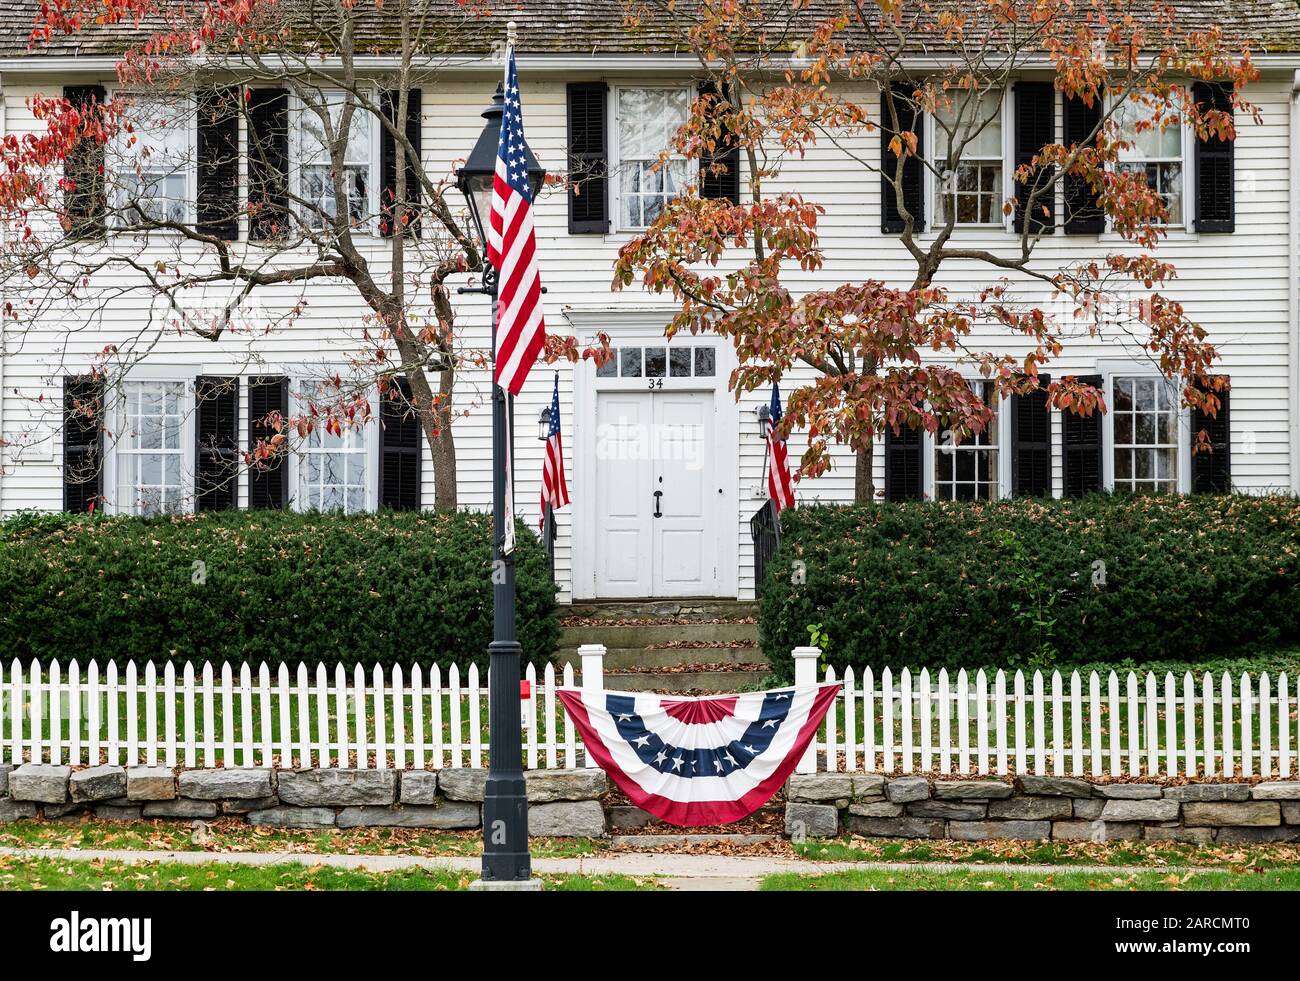 Affascinante casa coloniale con bandiera patriottica americana. Foto Stock